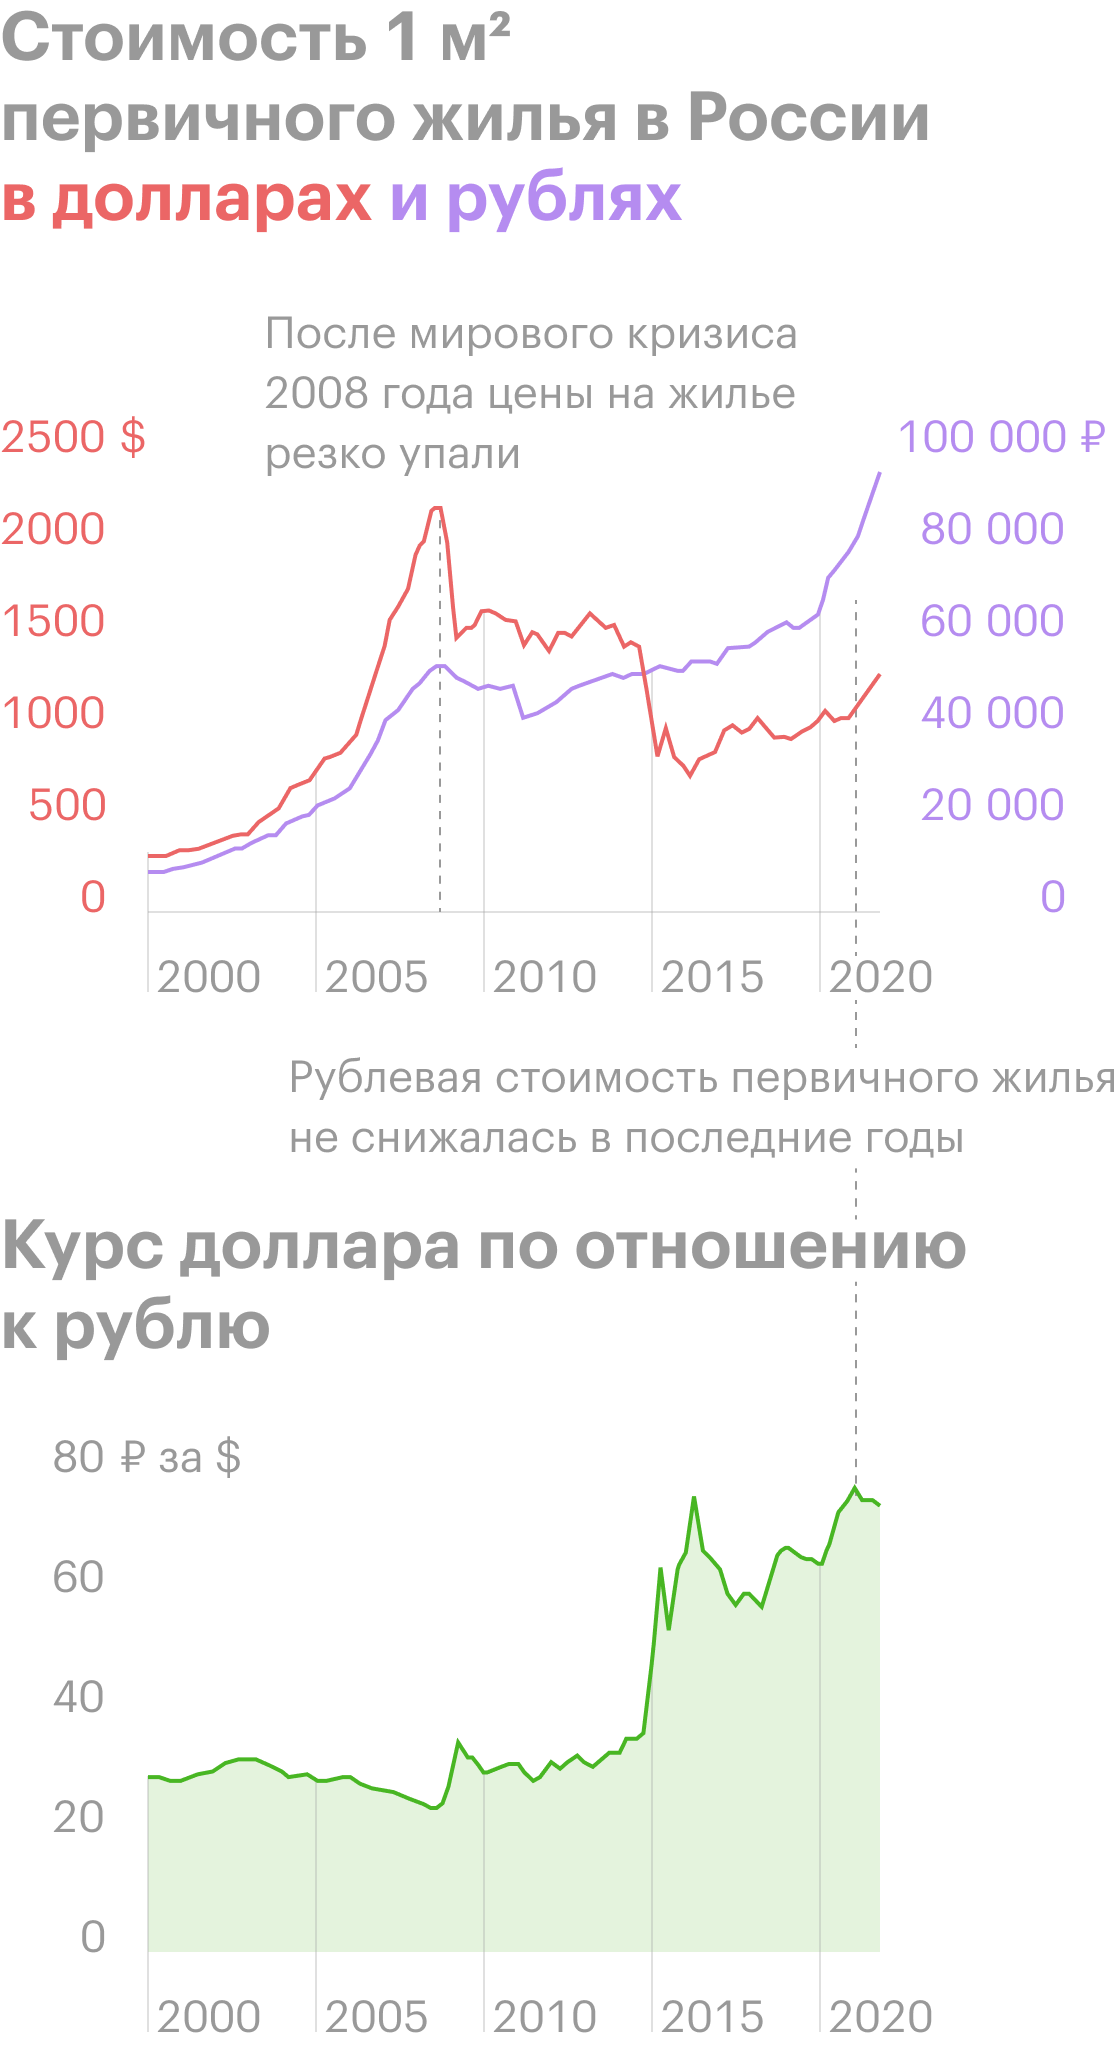 стоимость квартиры в москве в 2000 году